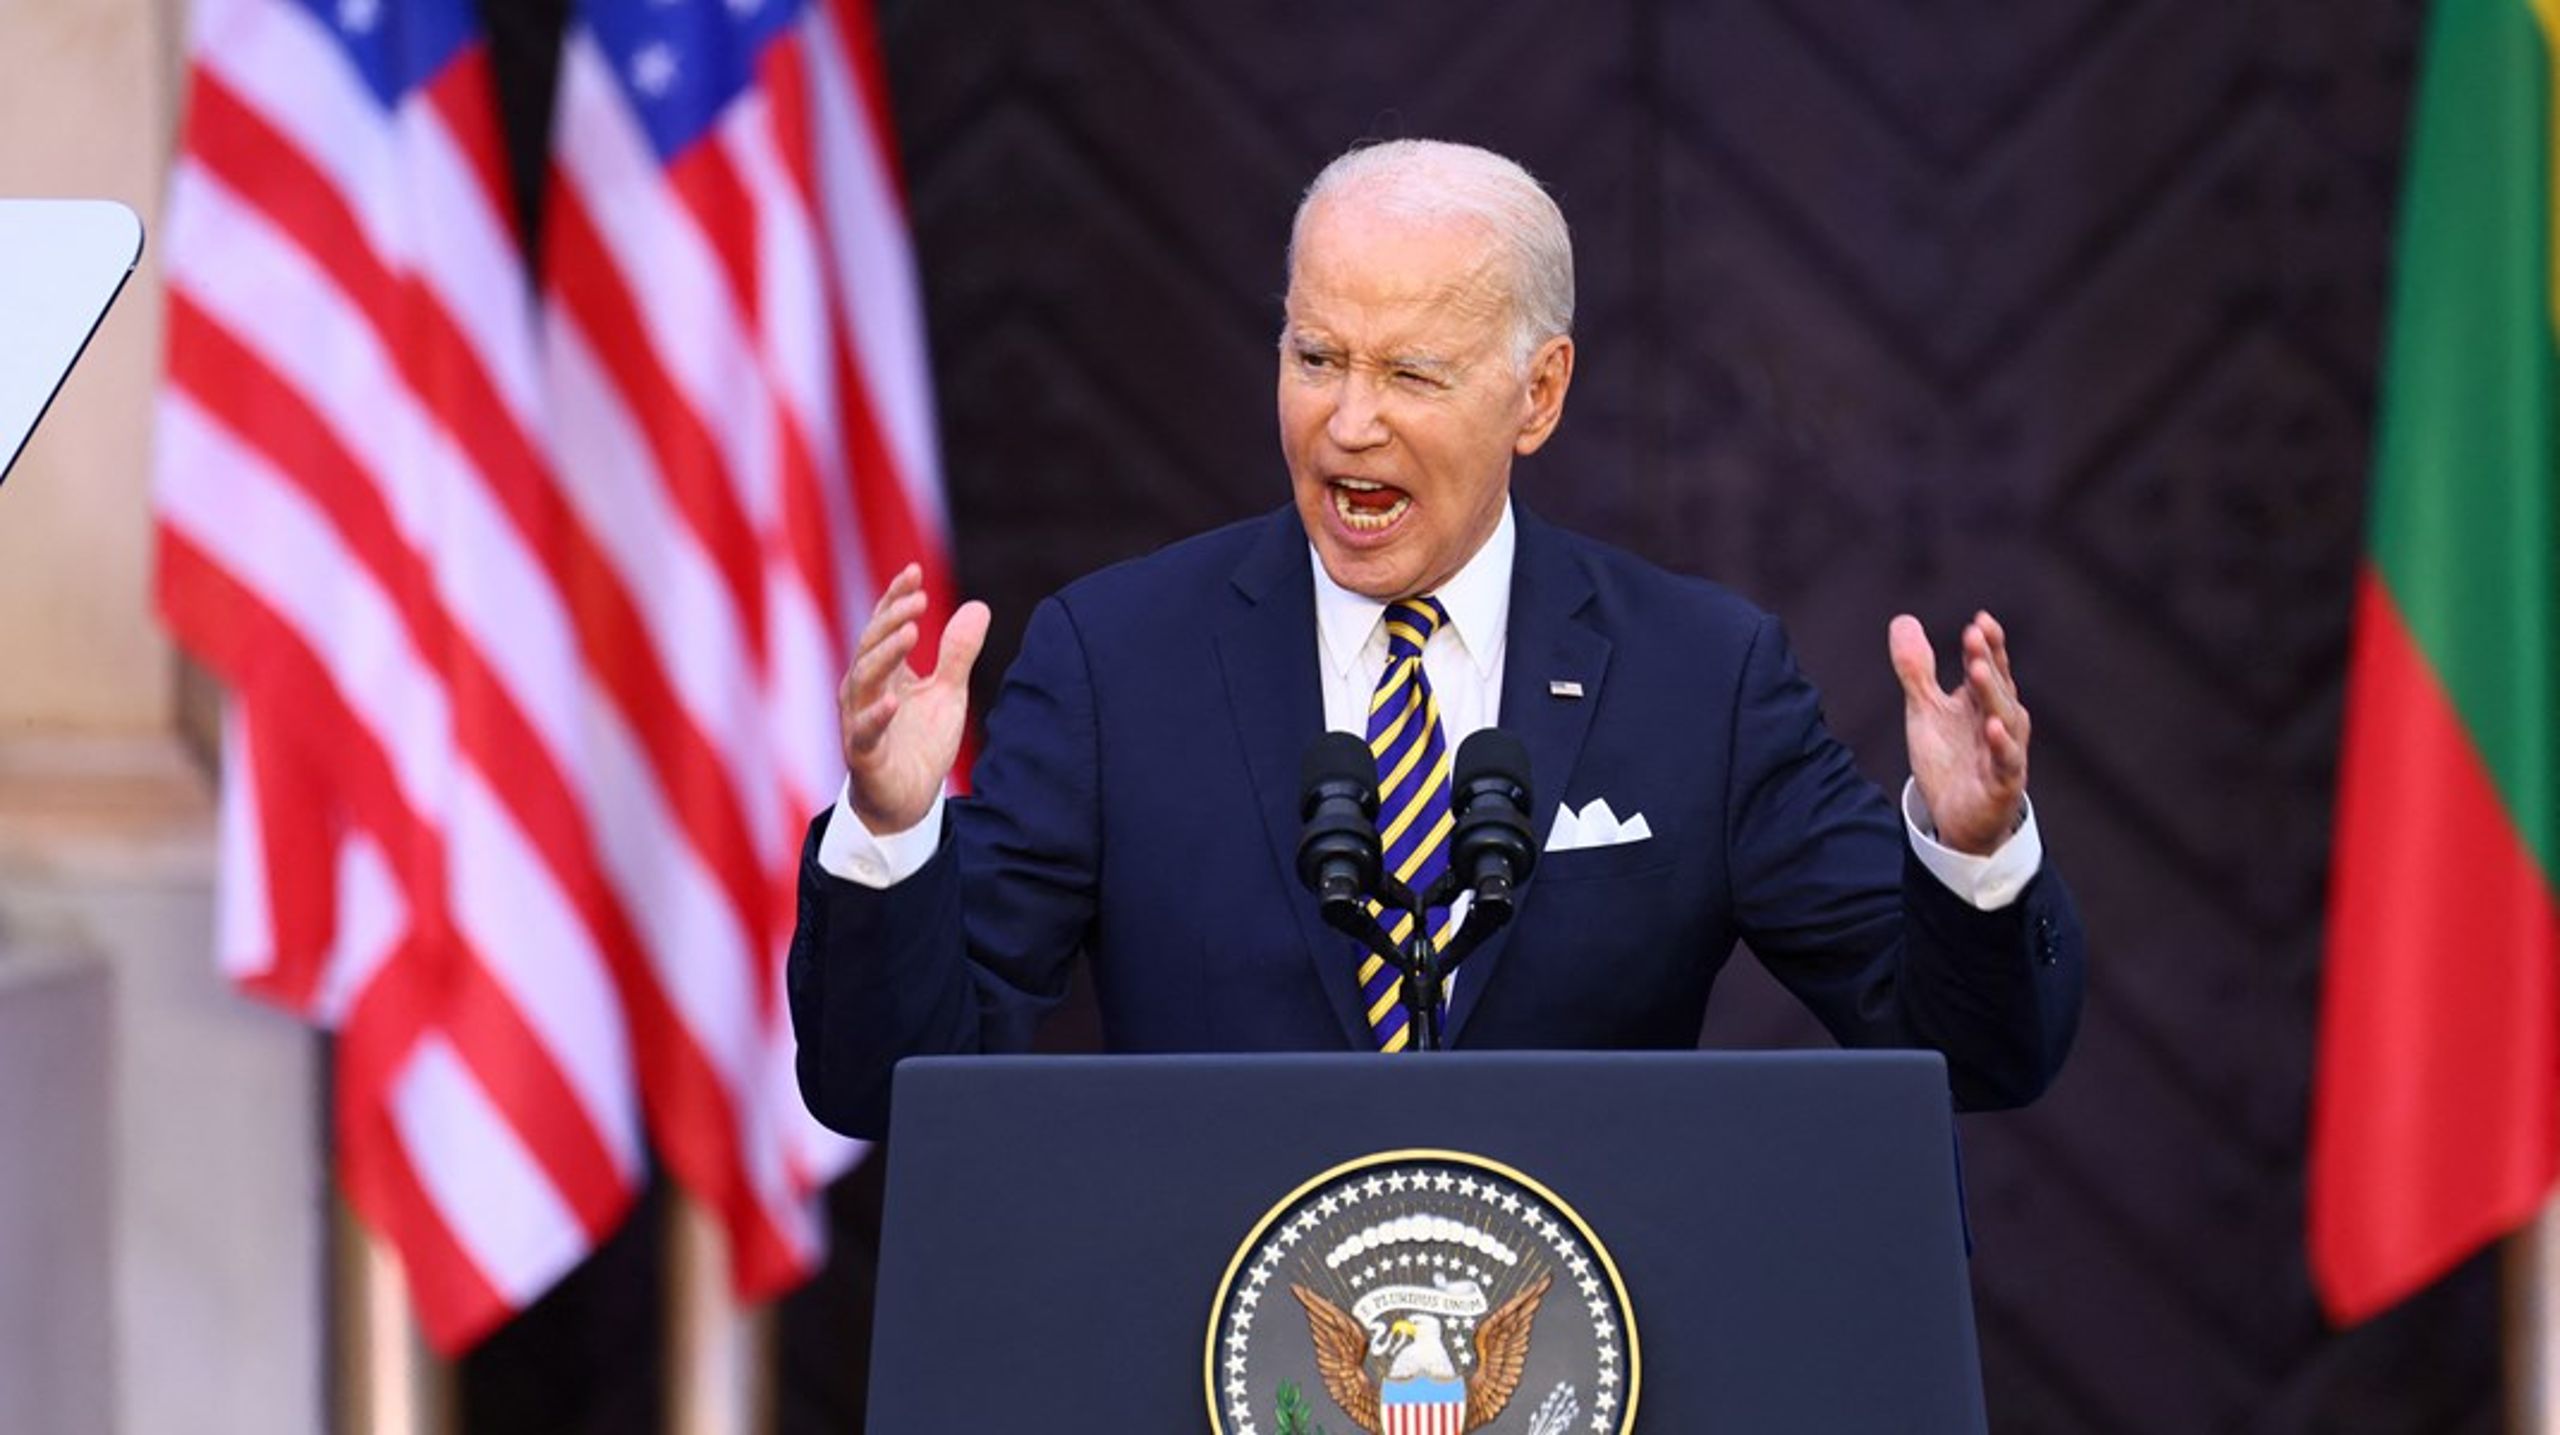 Selvom Joe Biden virkede rolig og afdæmpet, da han talte til litauerne, fik han alligevel ild i øjnene på et særligt tidspunkt i talen.